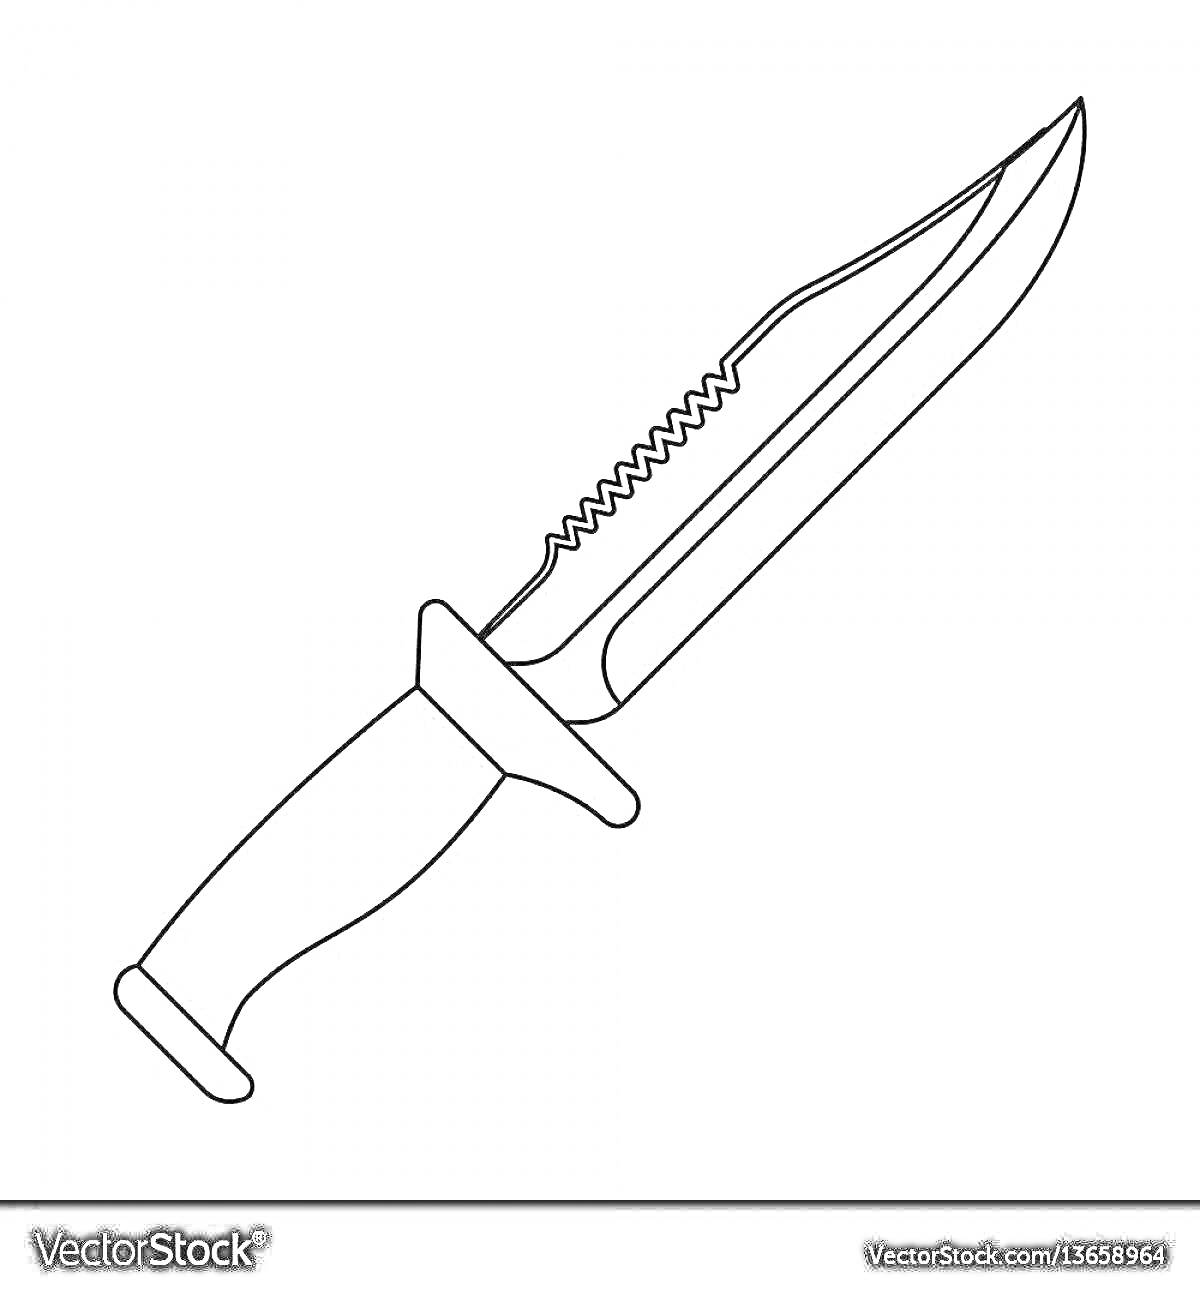 Раскраска Стендовый нож с зазубренным верхним лезвием и защитной гаррдой